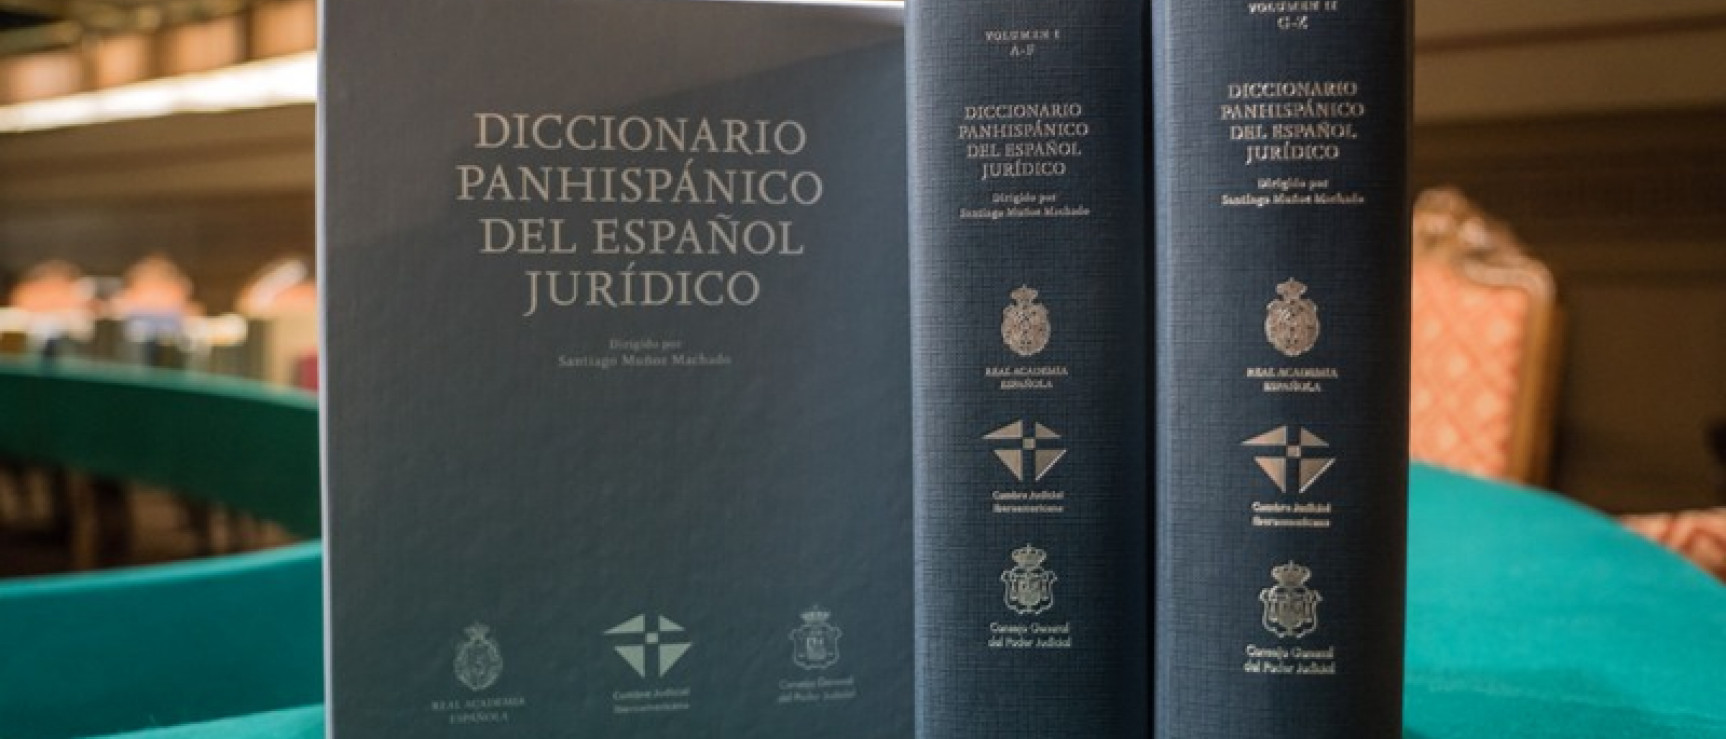 Diccionario panhispánico del español jurídico.